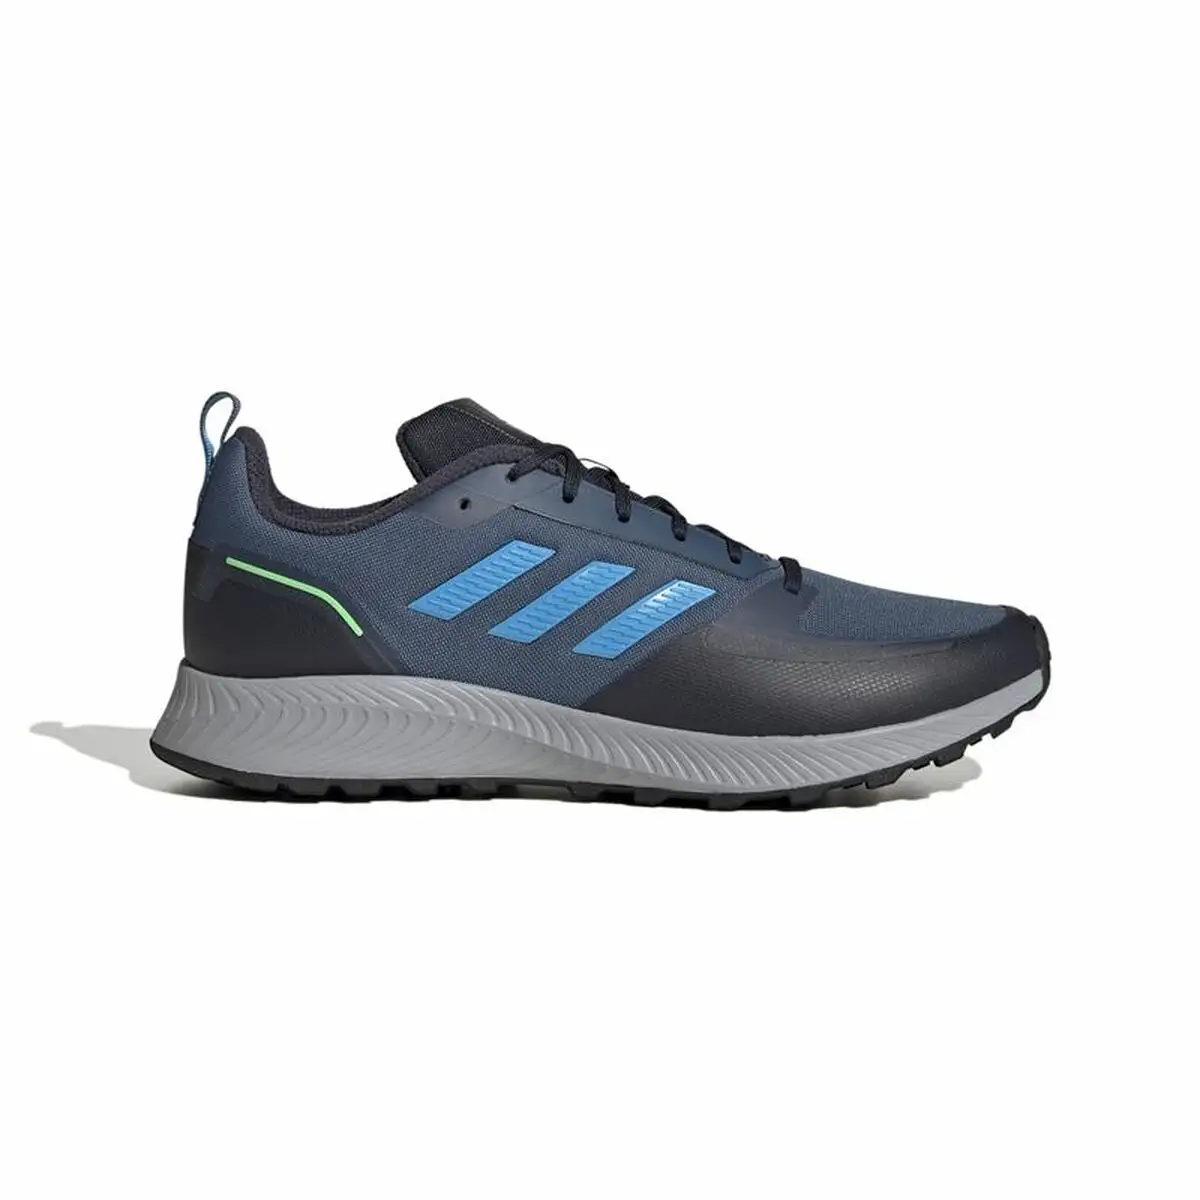 Chaussures de running pour adultes adidas runfalcon 2 0 bleu fonce homme_5392. Bienvenue chez DIAYTAR SENEGAL - Où Chaque Détail Fait la Différence. Découvrez notre sélection méticuleuse et choisissez des articles qui répondent à vos exigences.